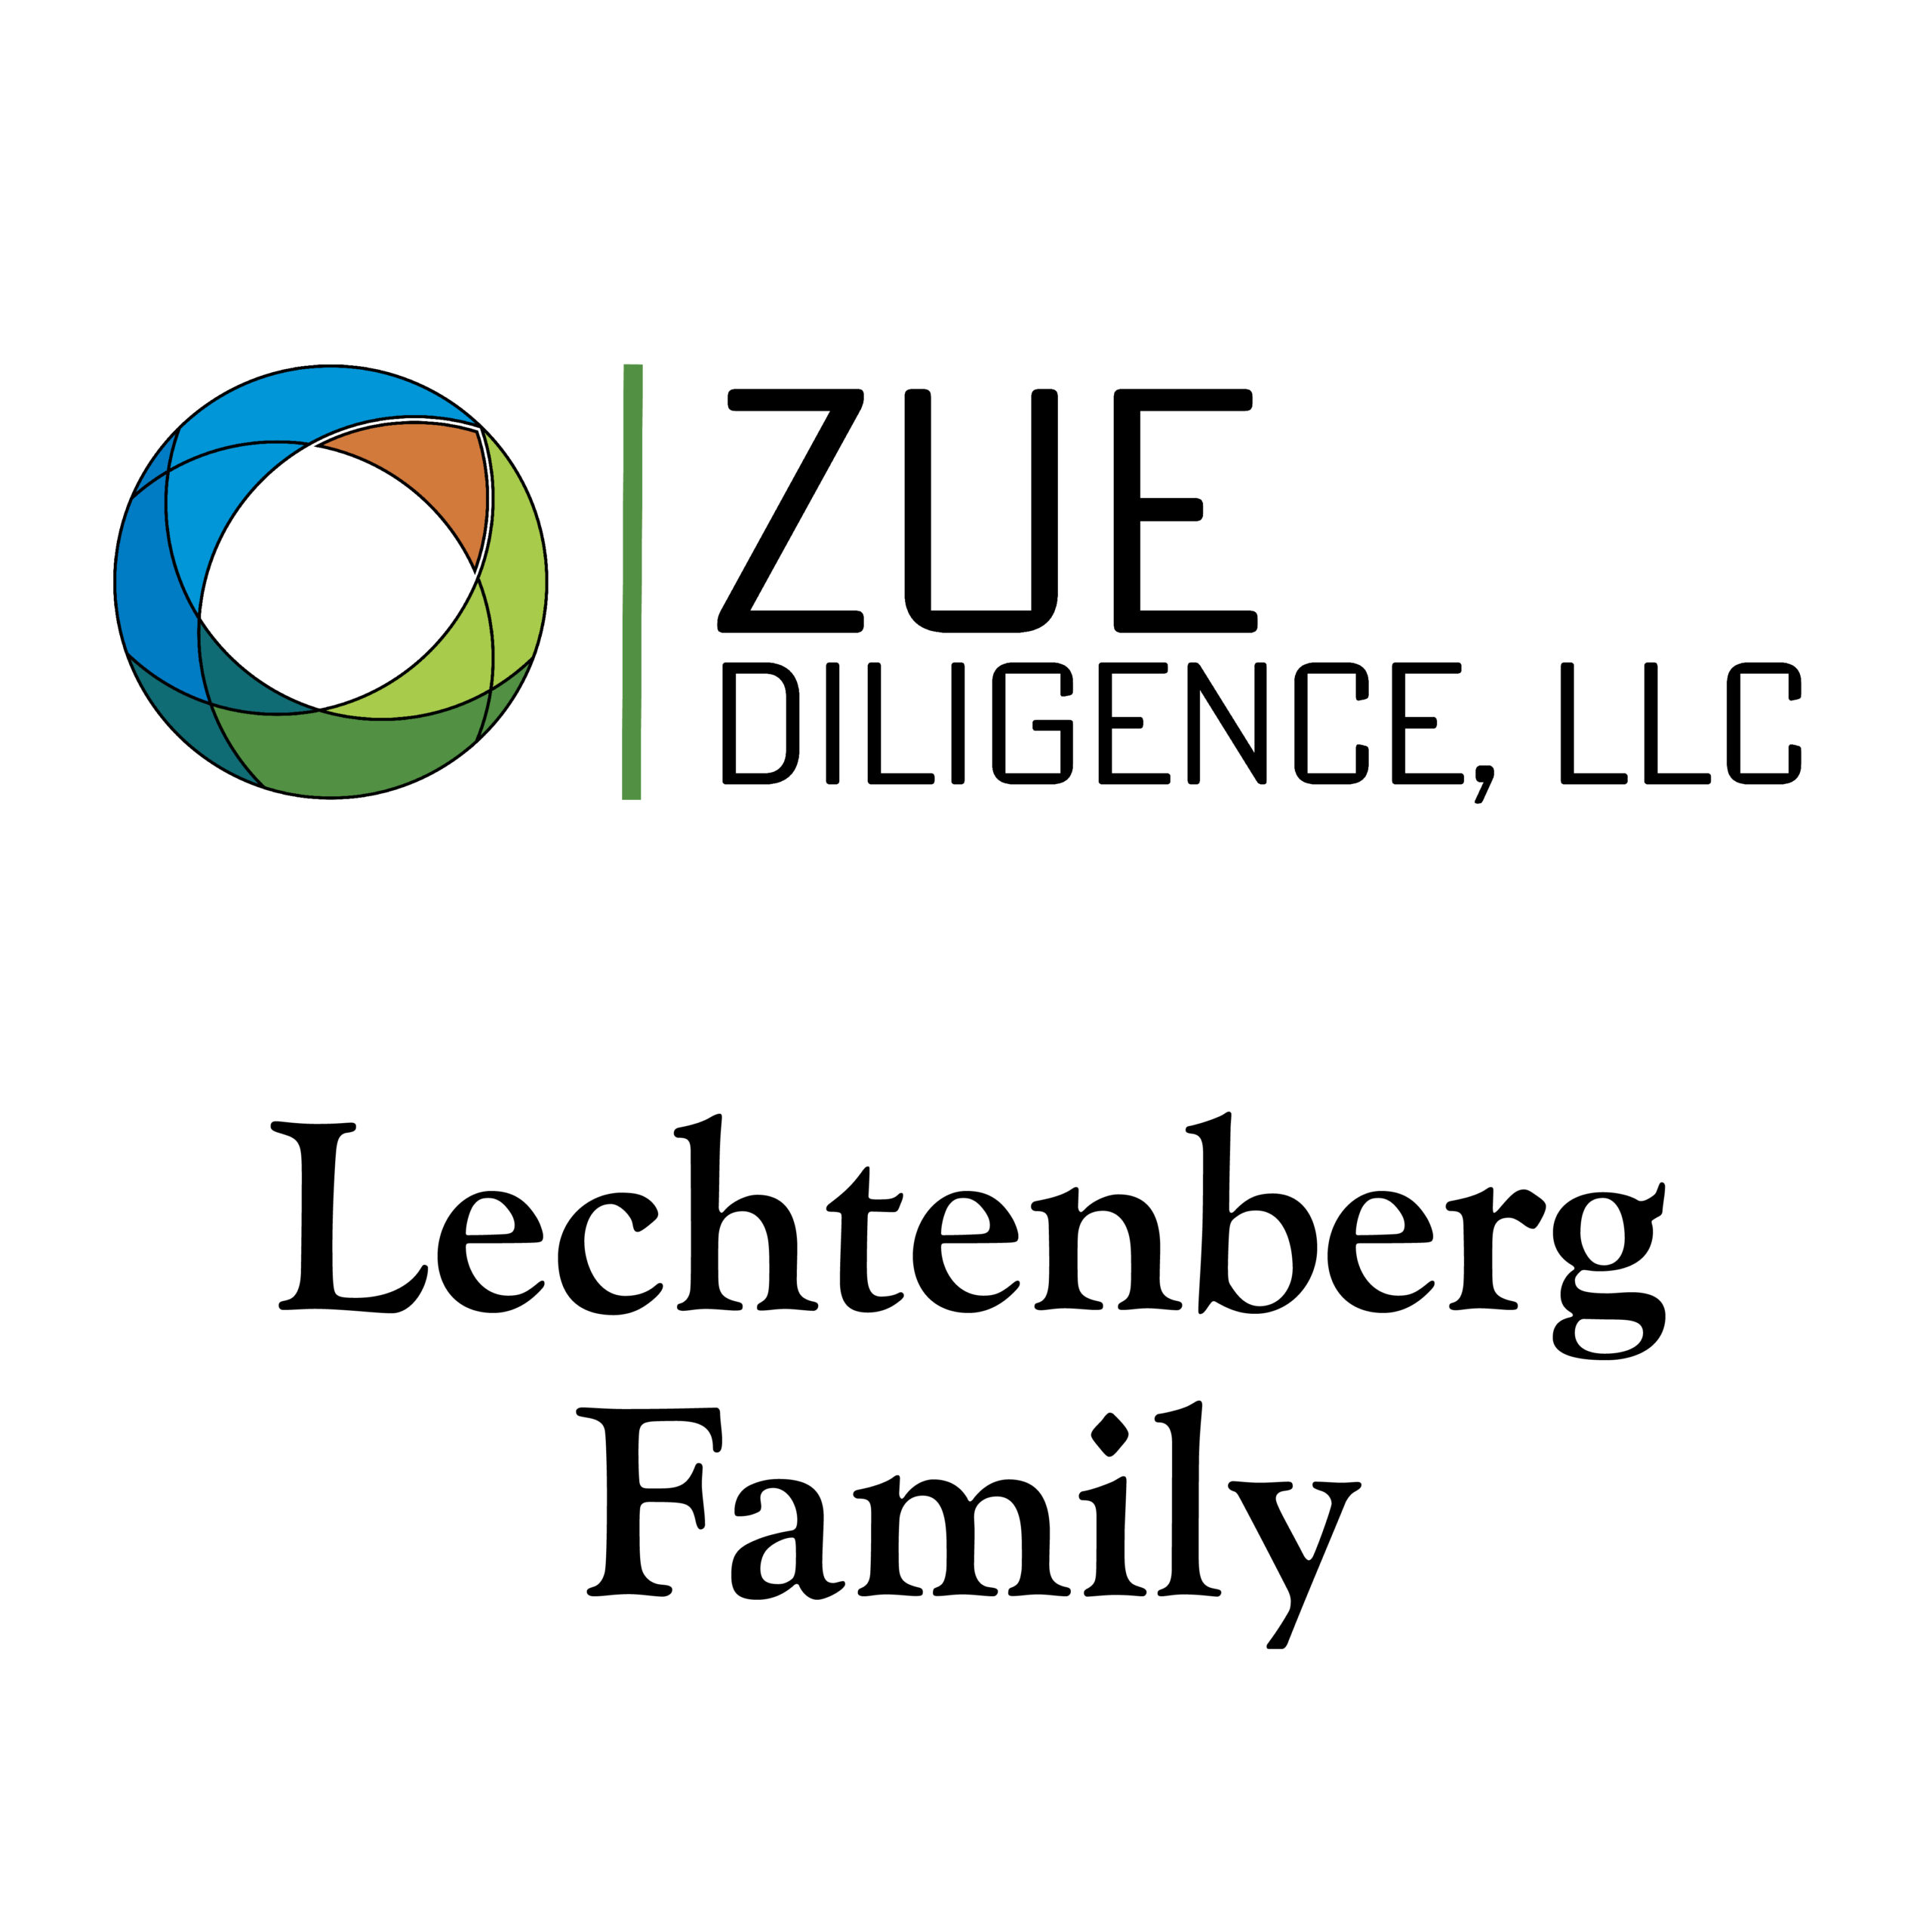 Zue Diligence, LLC/Lechtenberg Family